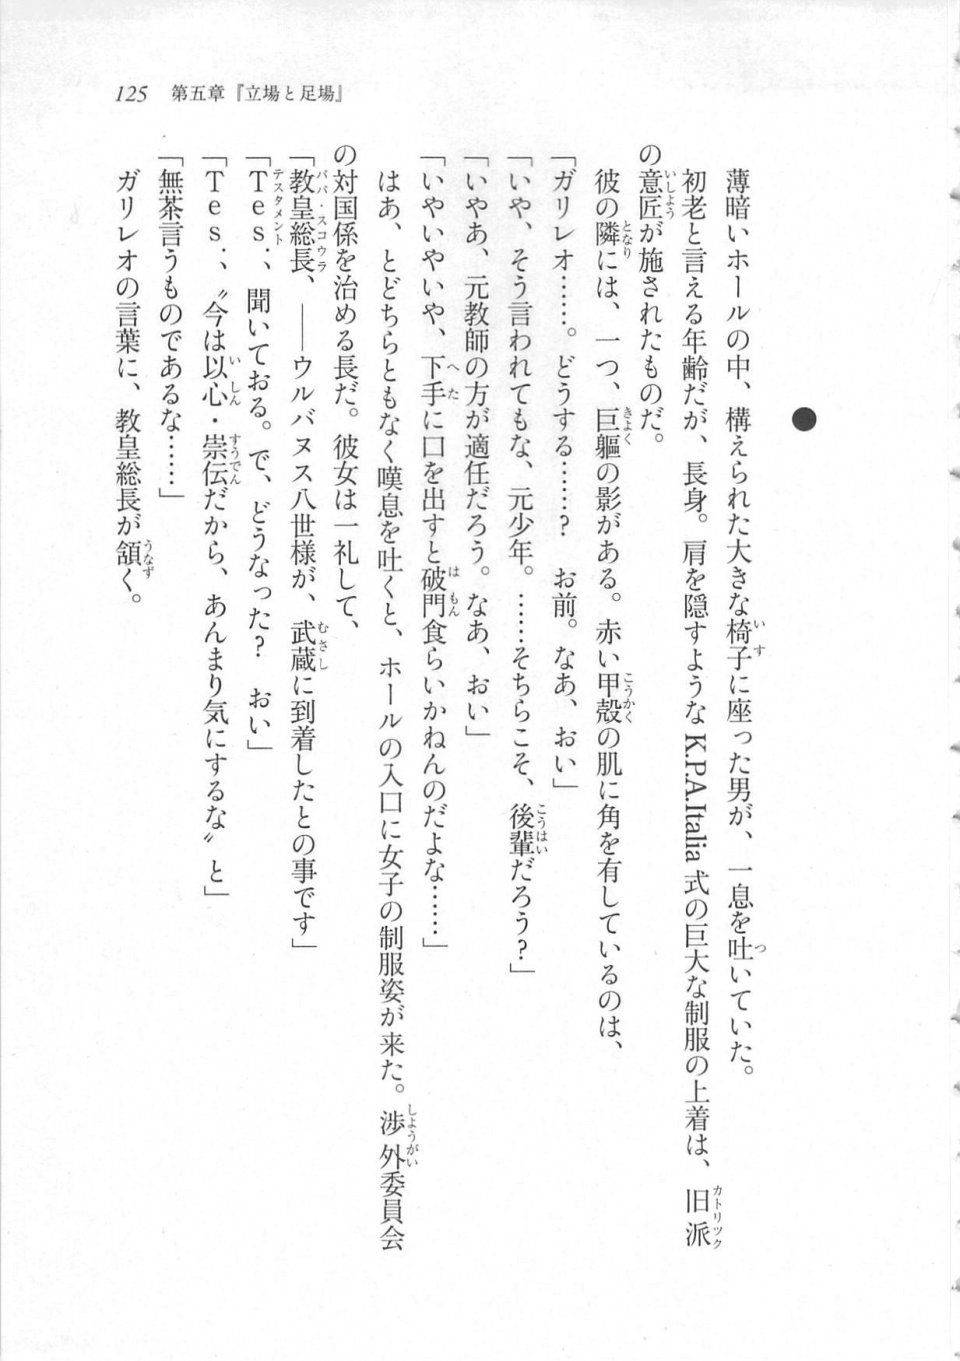 Kyoukai Senjou no Horizon LN Sidestory Vol 3 - Photo #129